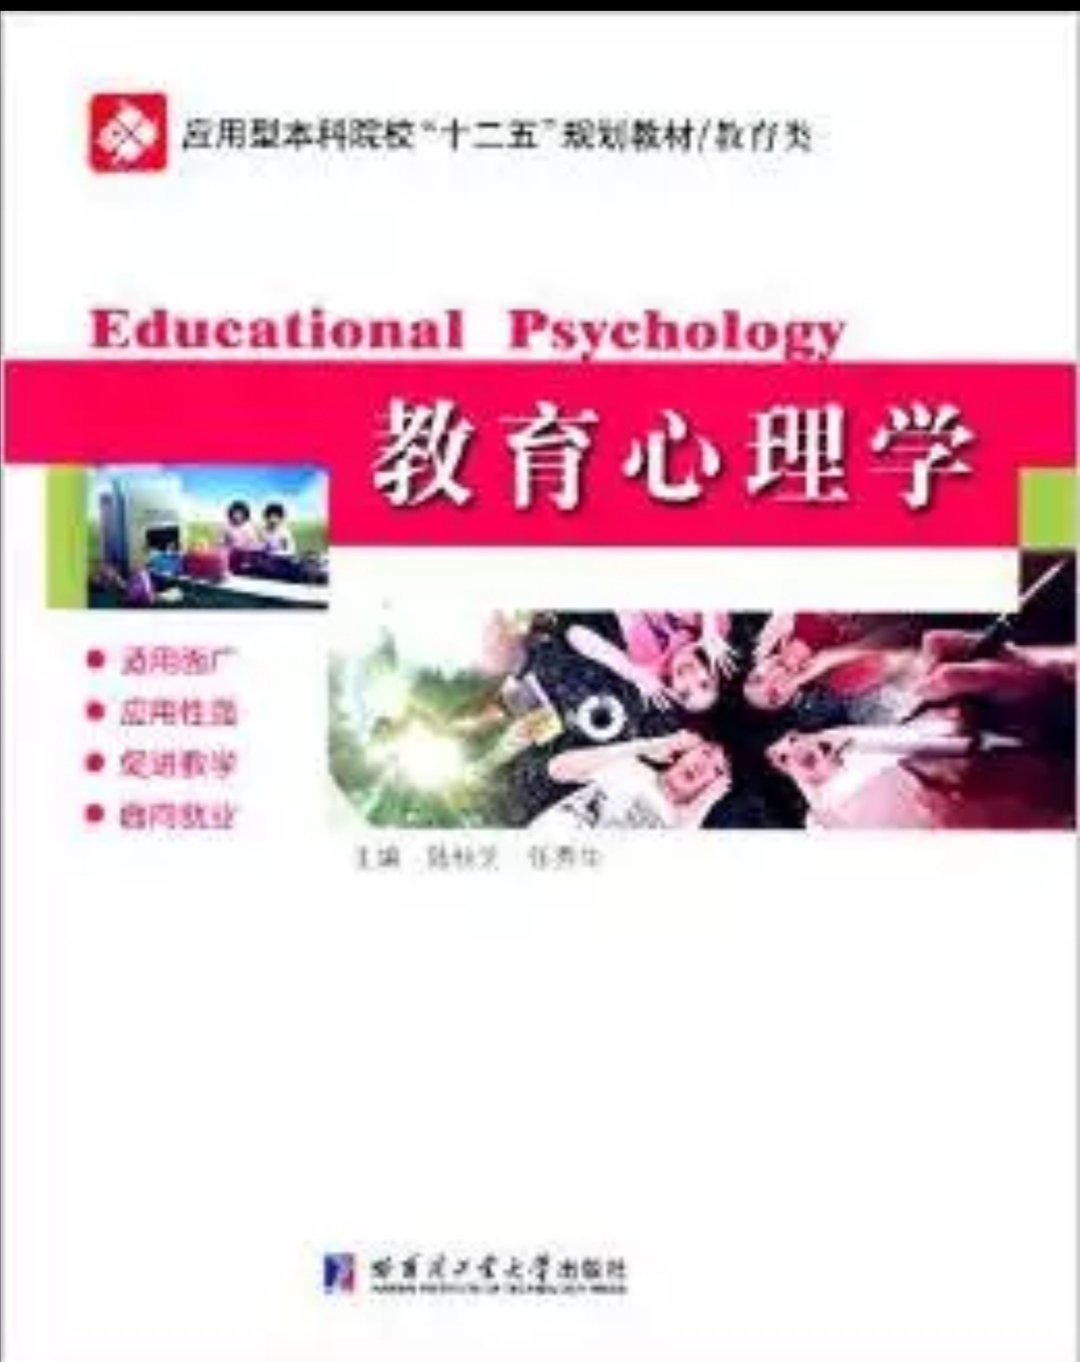 教育心理學(陸桂芝、任秀華編著書籍)